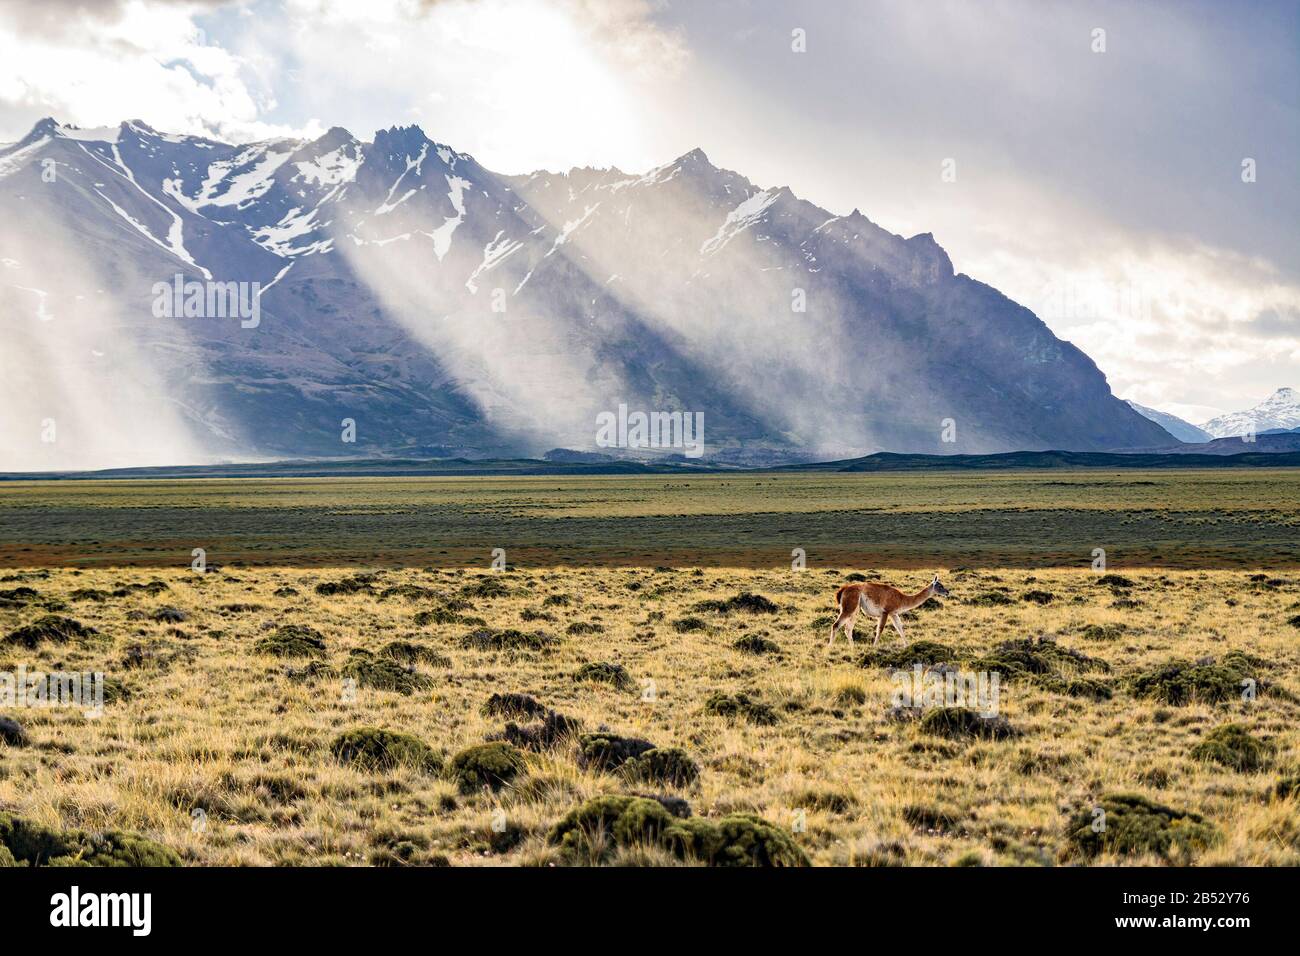 A solitary guanaco grazing in the Parque Nacional Perito Moreno, Patagonia Argentina Stock Photo